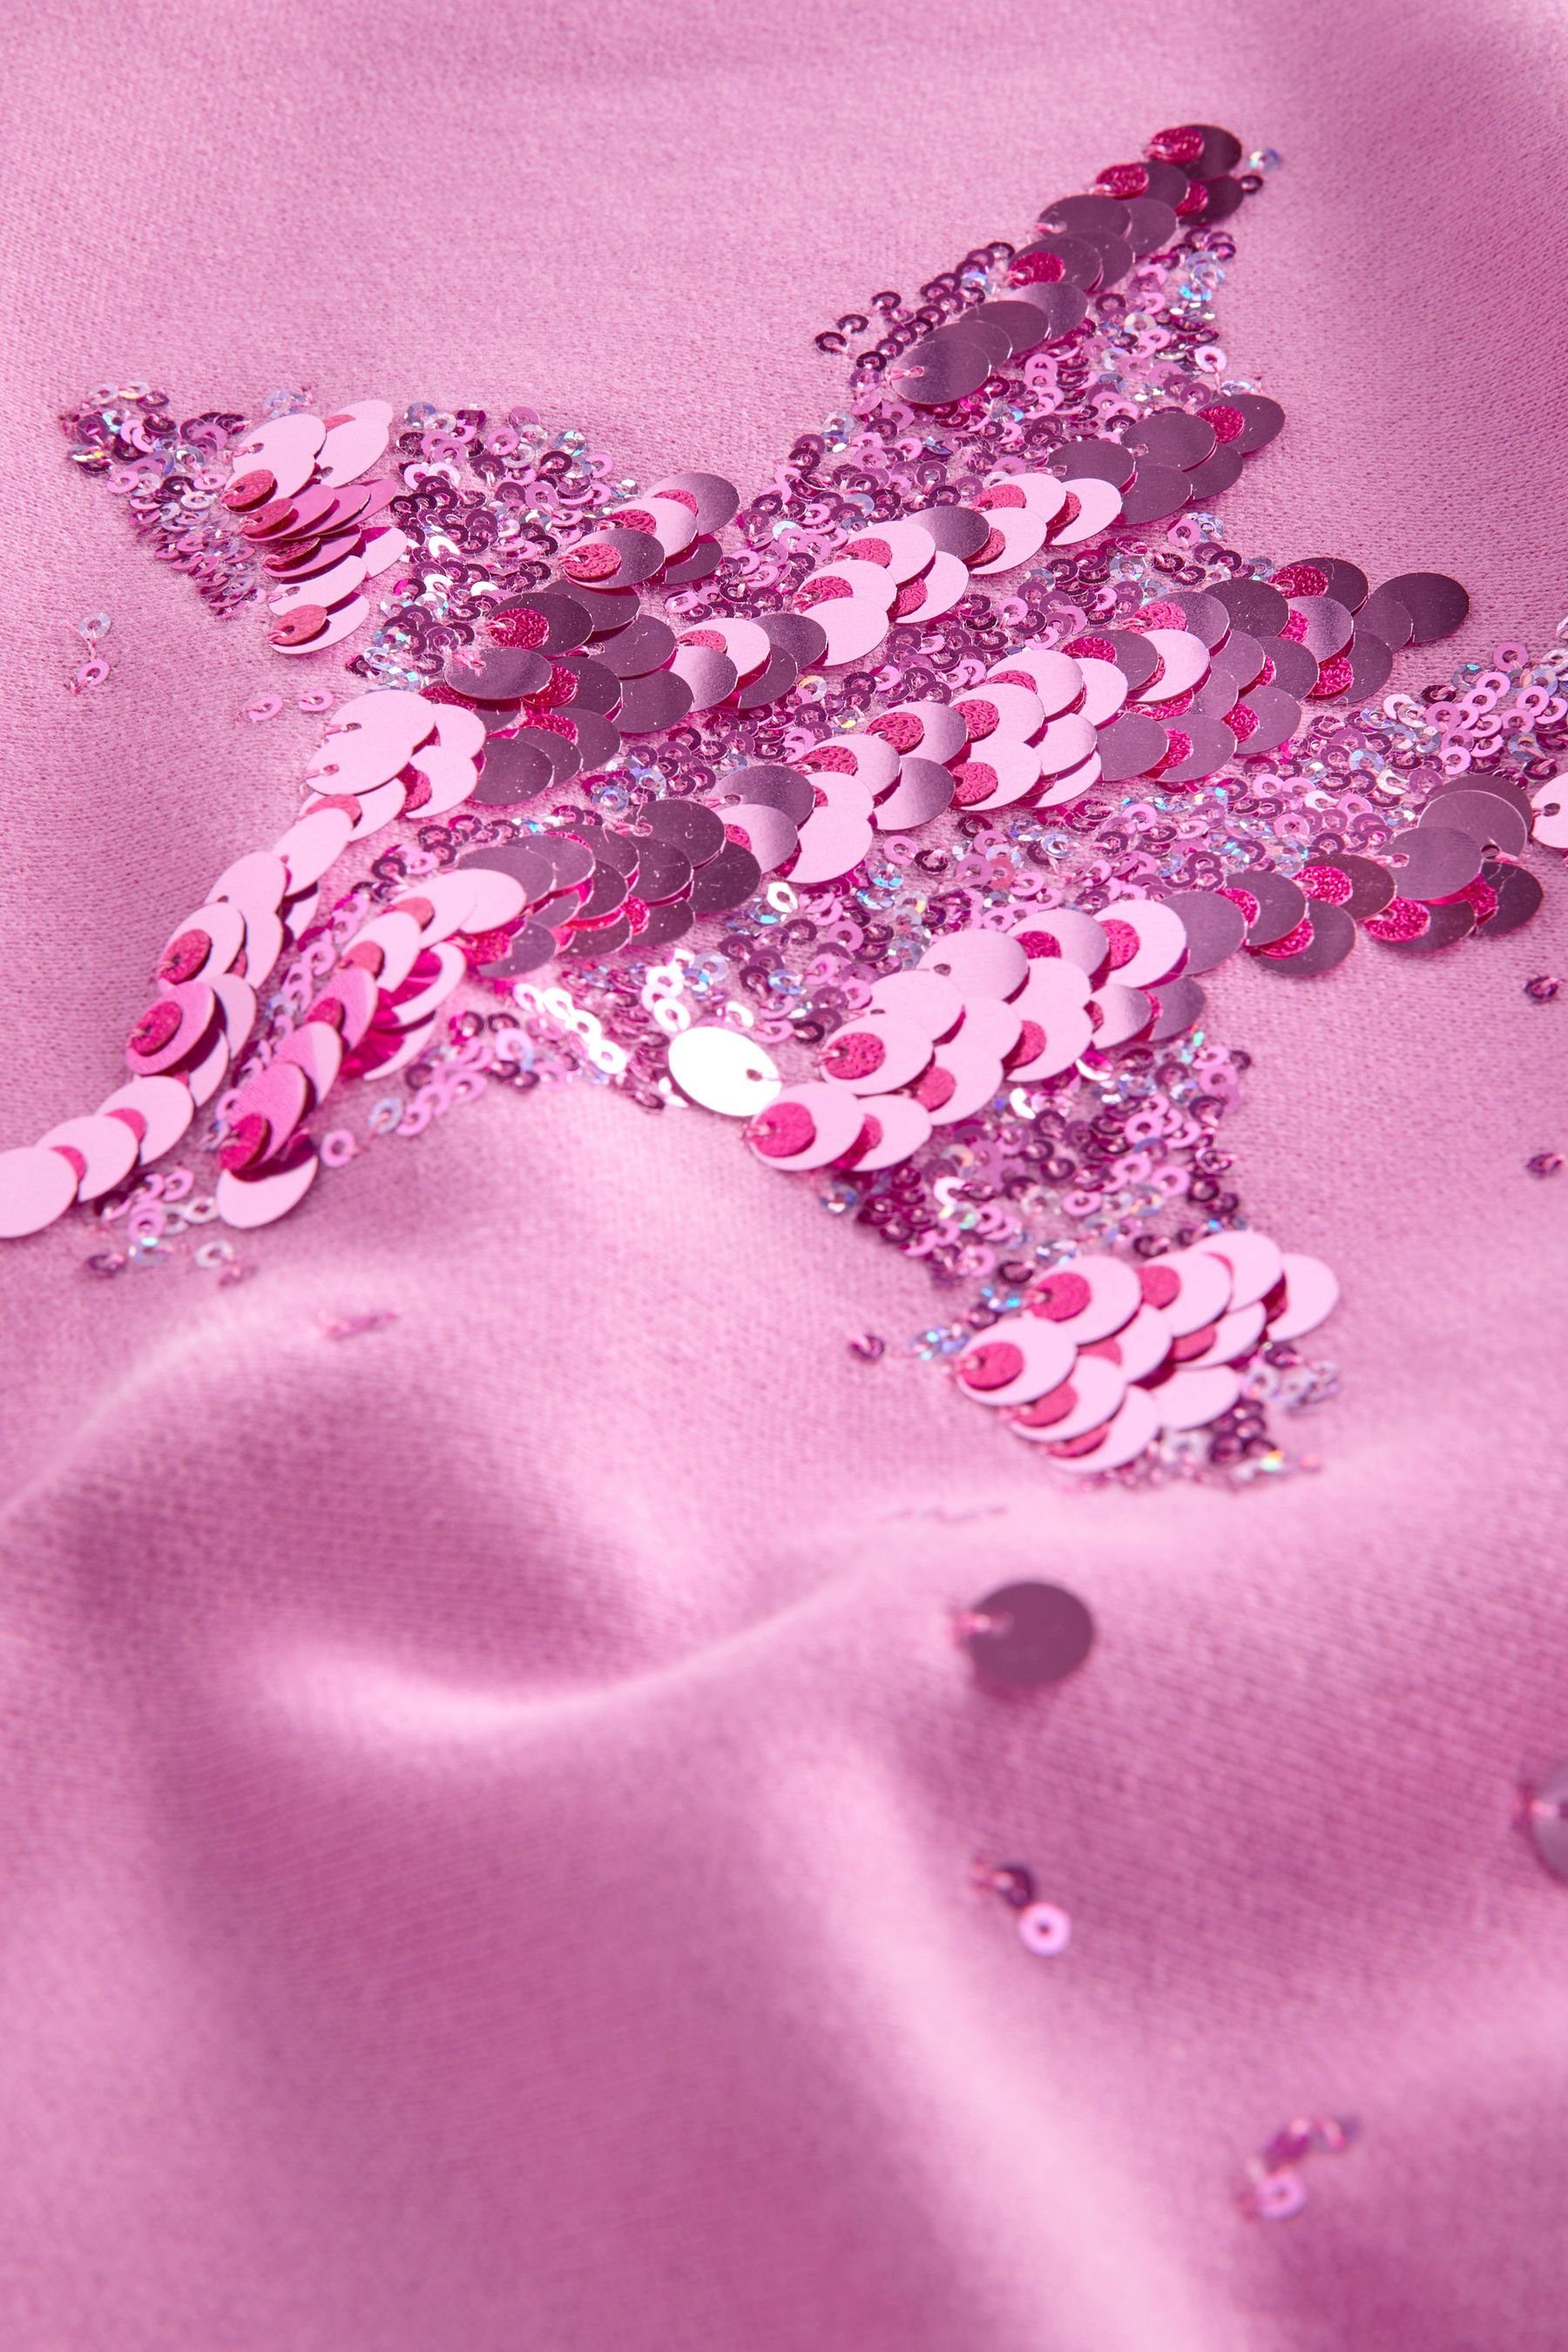 Next Sweatshirt Sweatshirt (1-tlg) Pink Rundhalsausschnitt mit Star Sequin